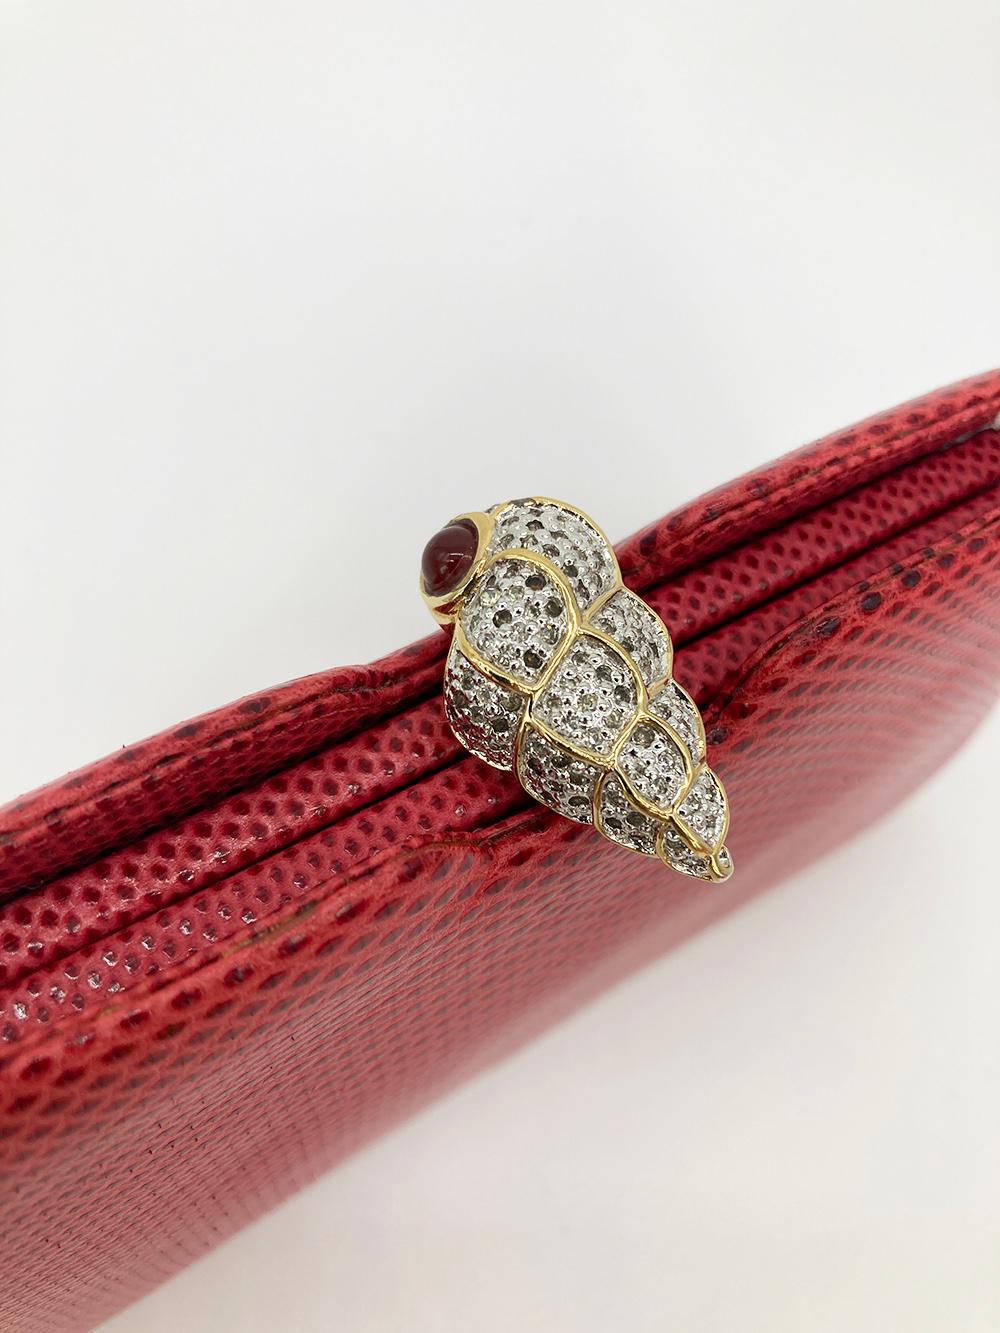 Women's Judith Leiber Red Lizard Crystal Shell Top Clutch